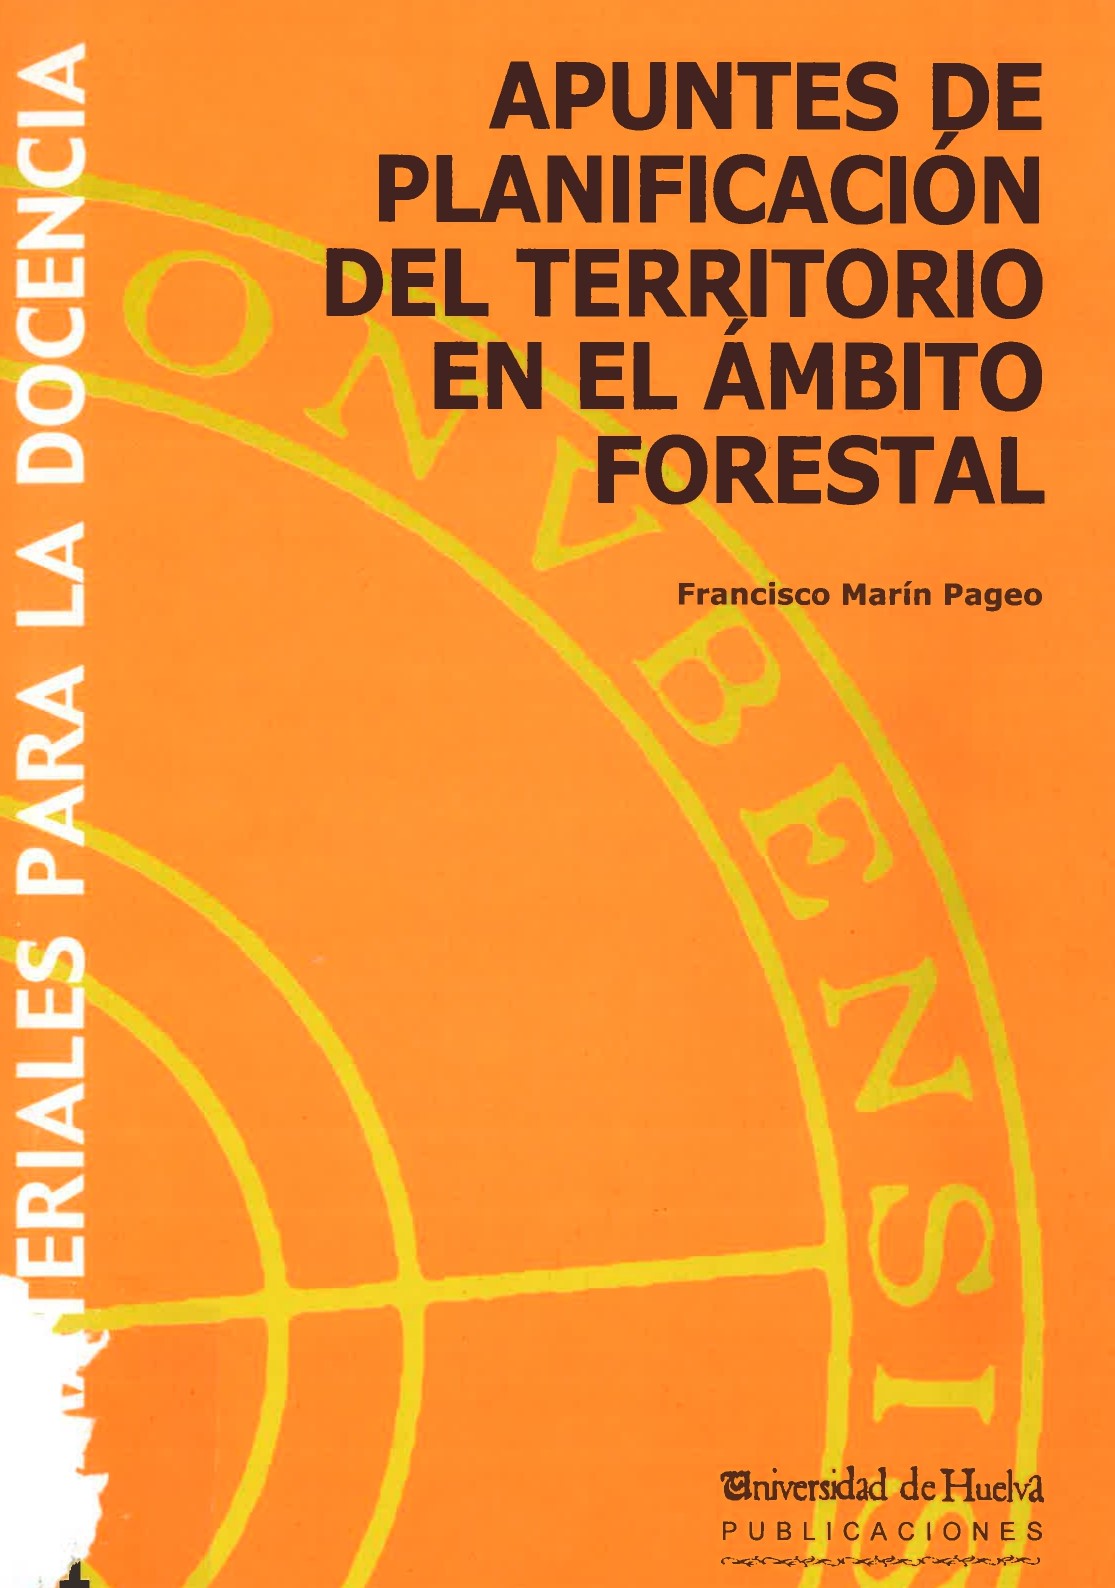 Imagen de portada del libro Apuntes de Planificación y Ordenación del Territorio en el Ámbito Forestal